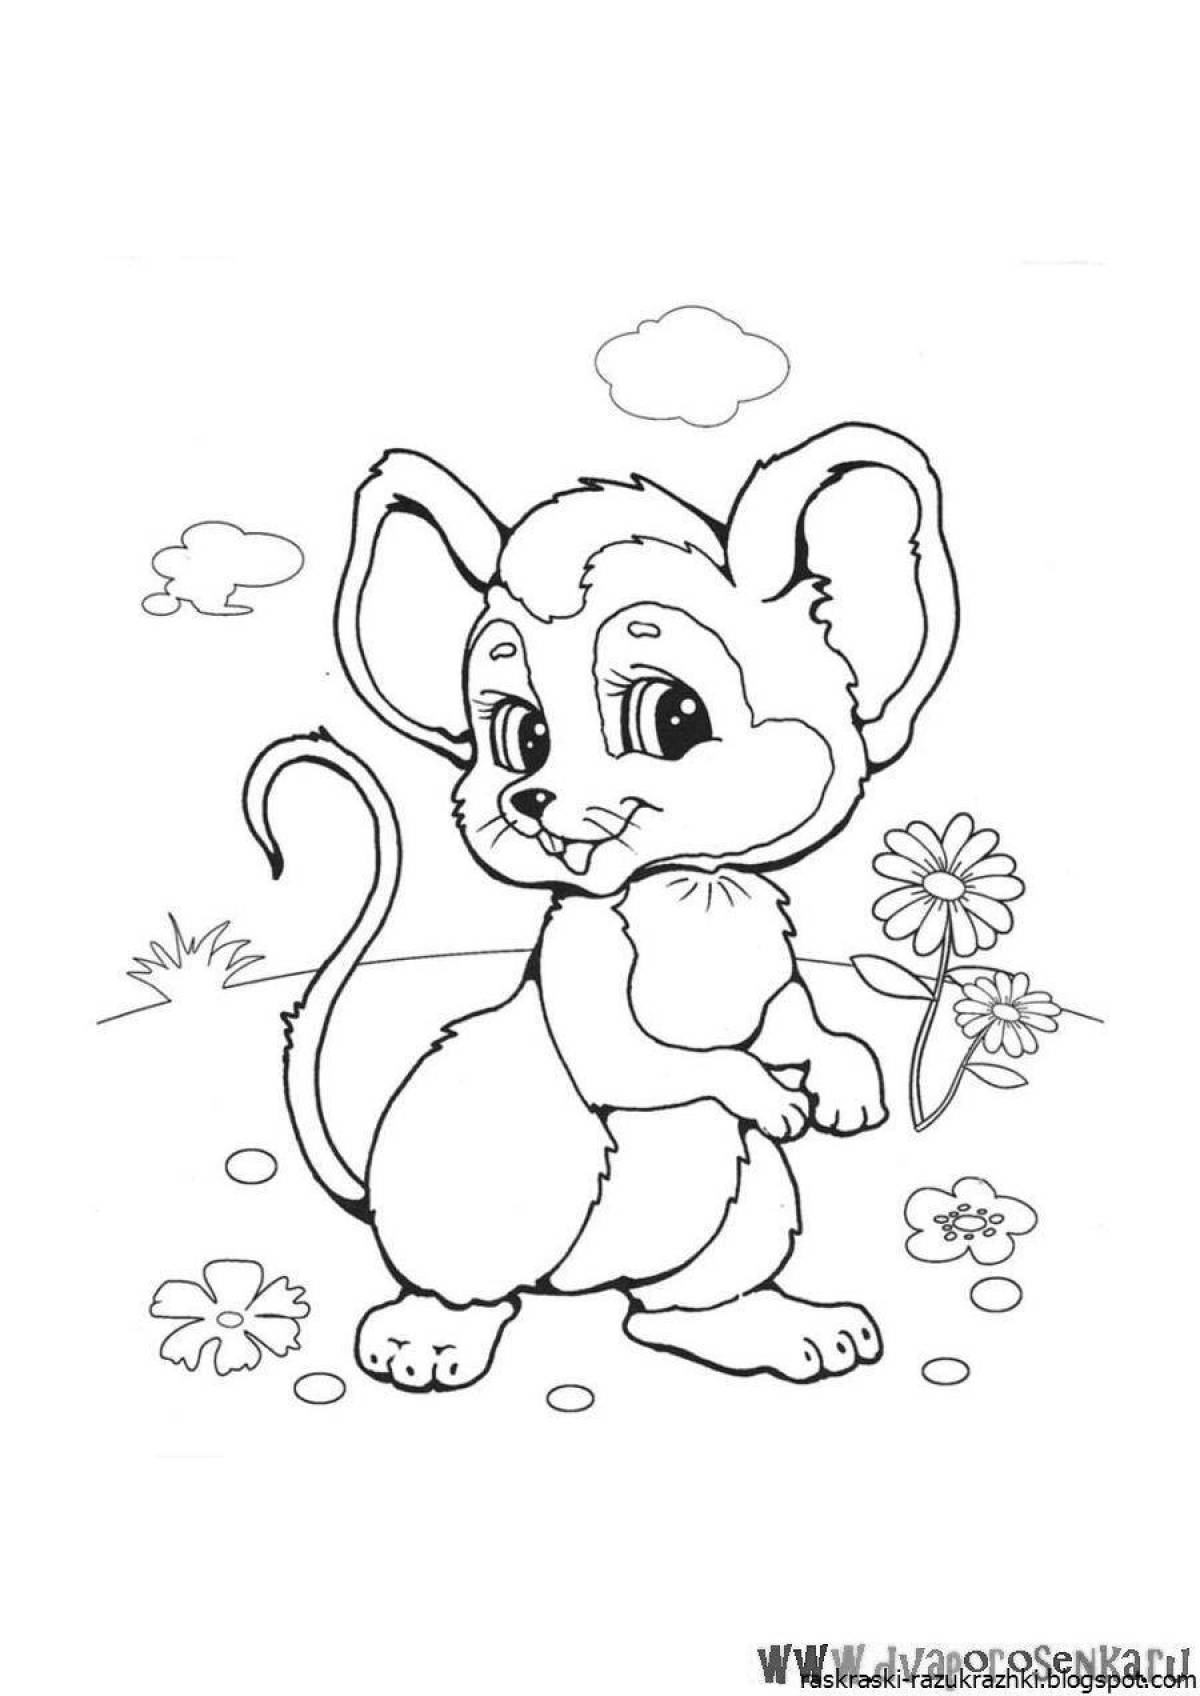 Coloring cute little mouse